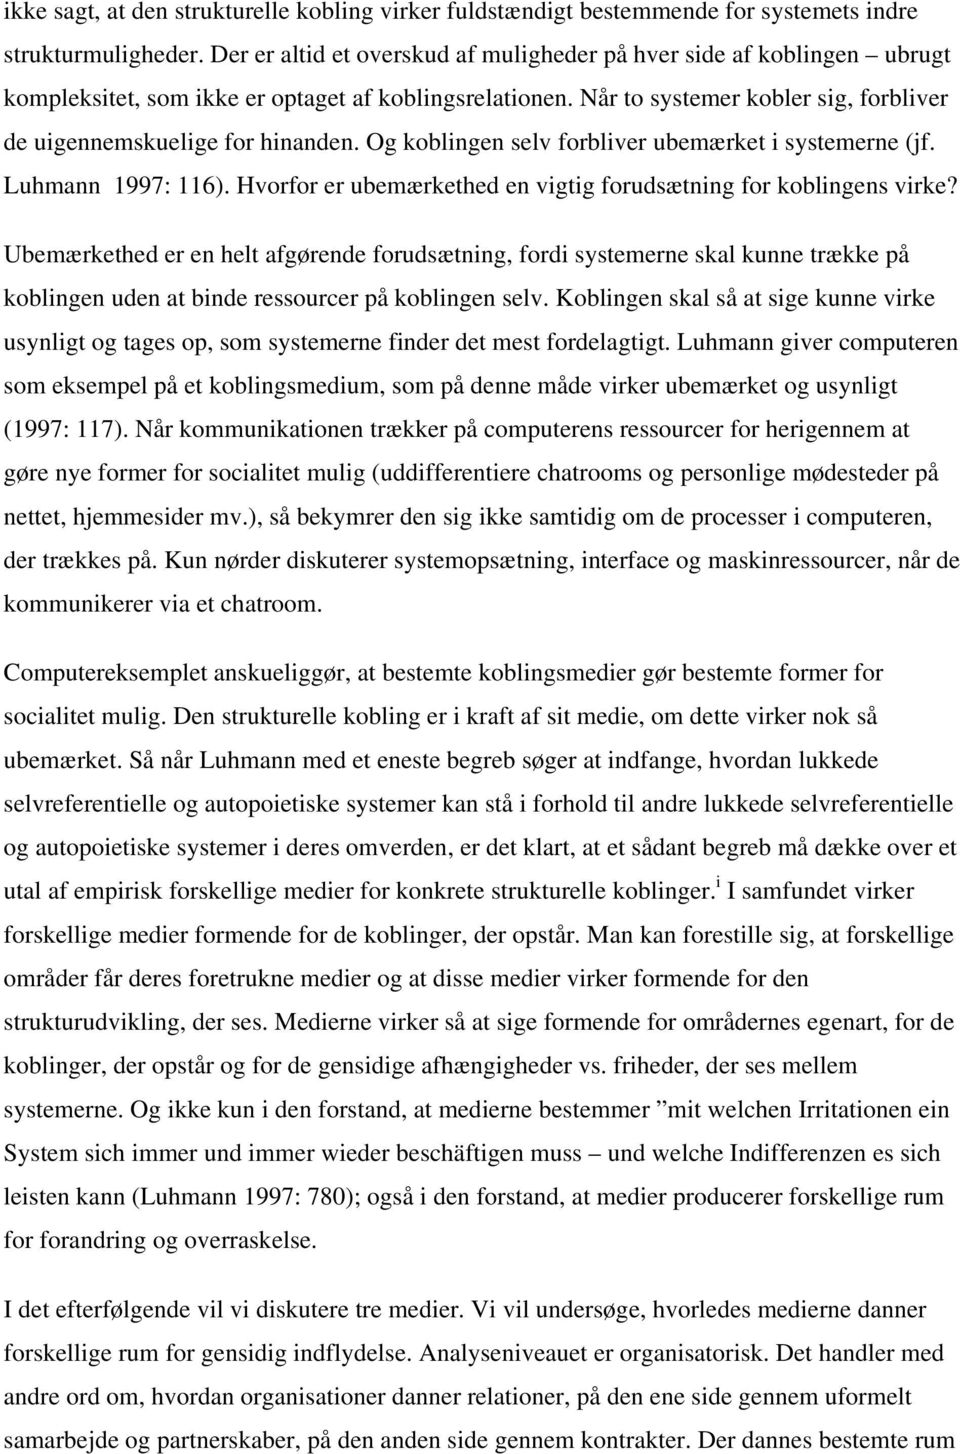 Strukturelle koblinger. Holger Højlund & Anders La Cour WP 15/ PDF ...